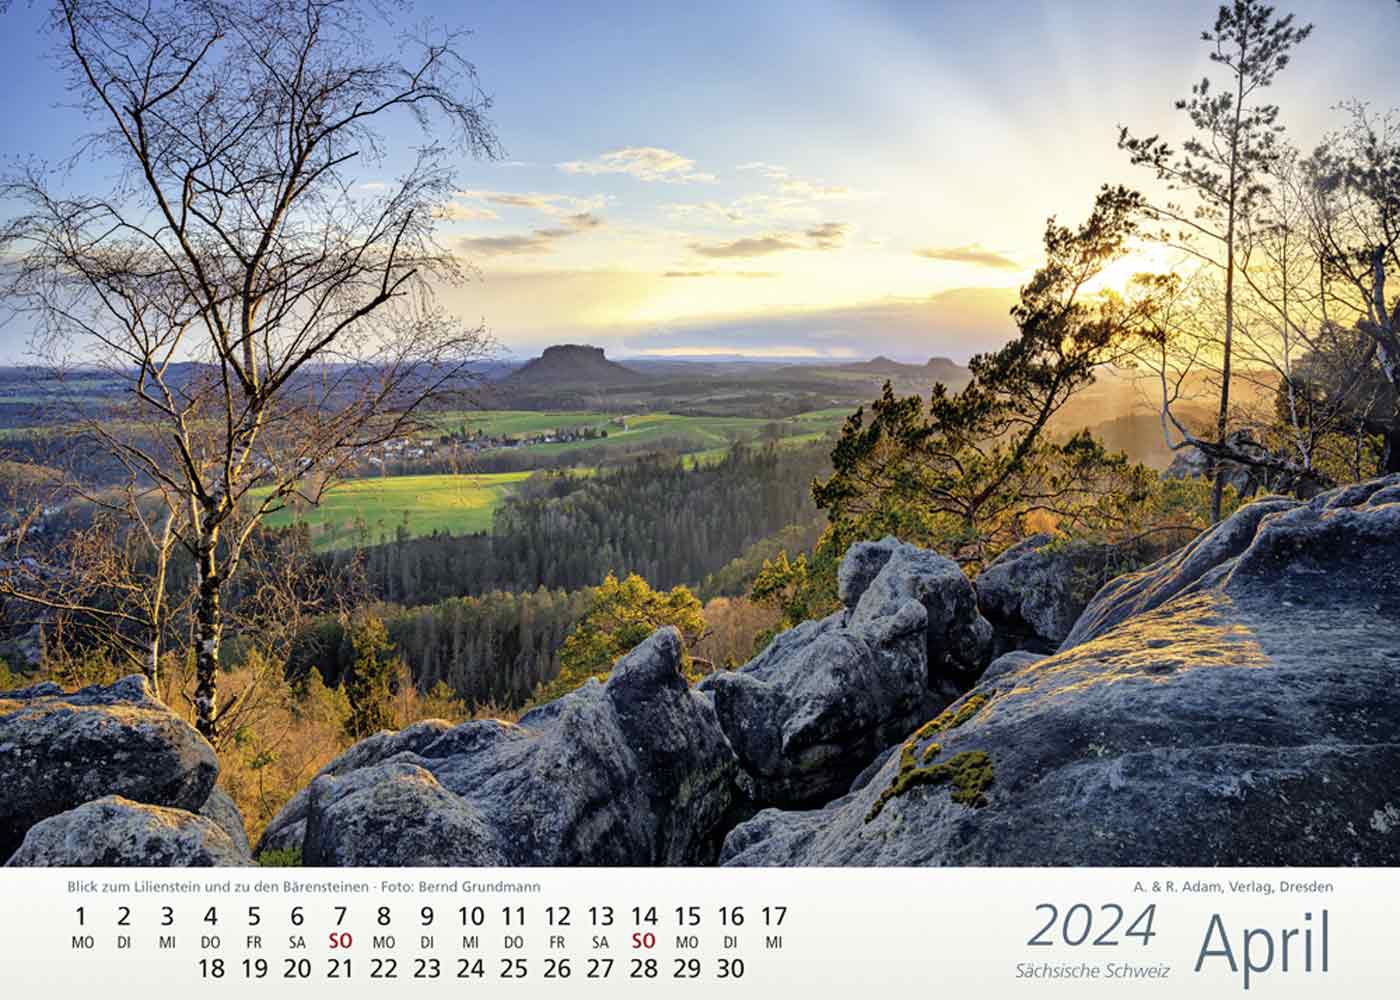 Kalender Sächsische Schweiz 2024